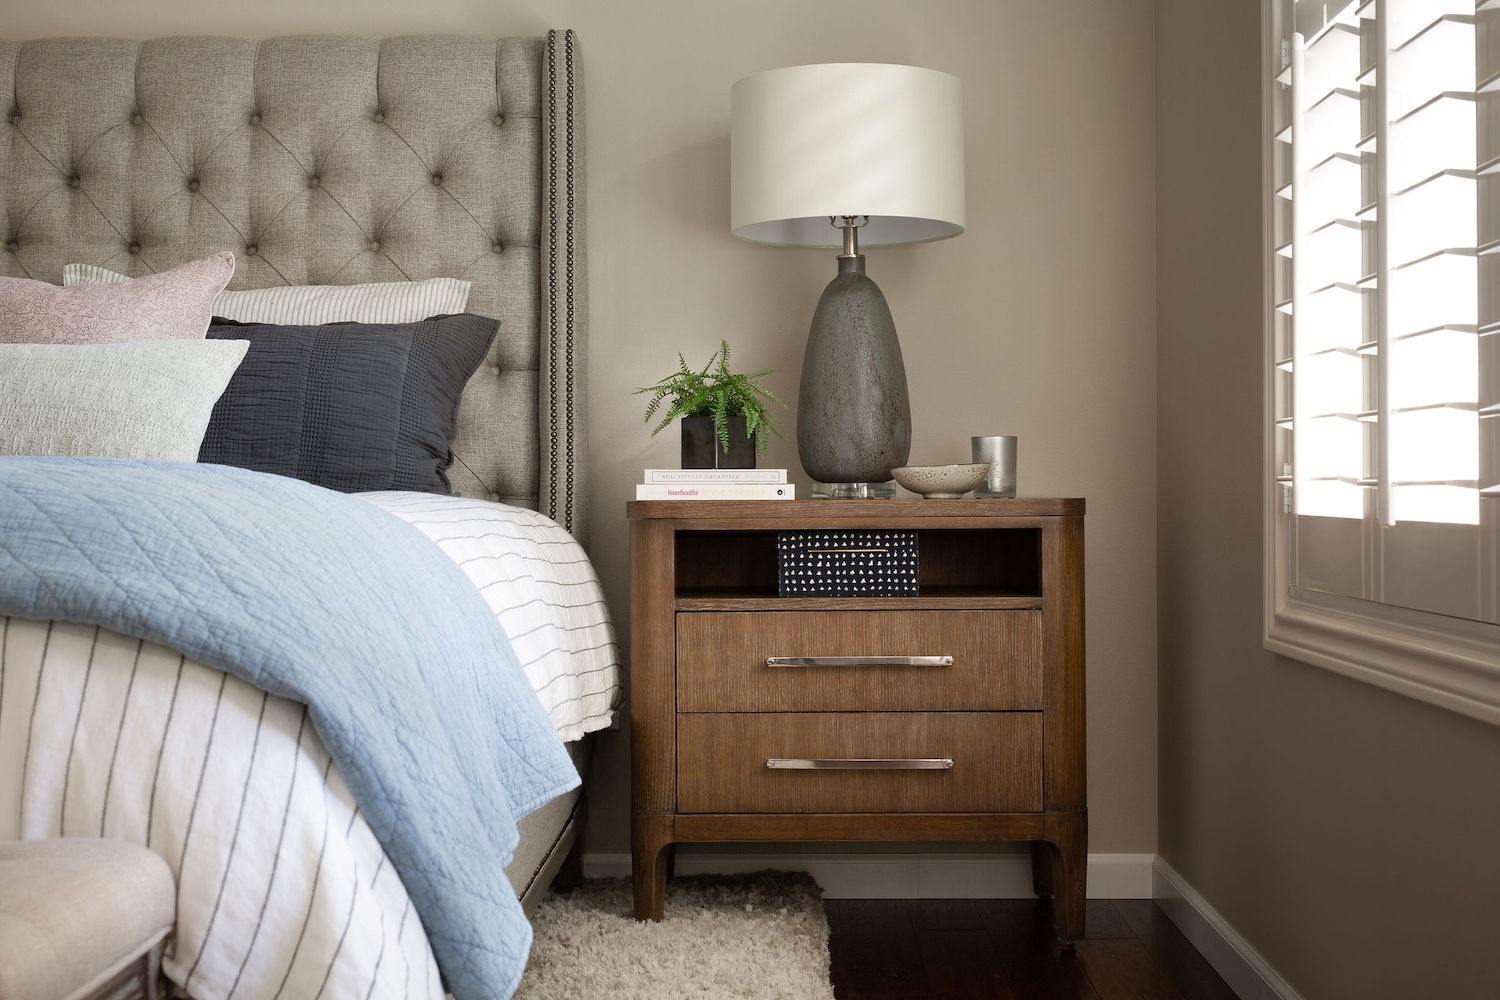 nightstand-lamp-accessories-bedroom-interior-design